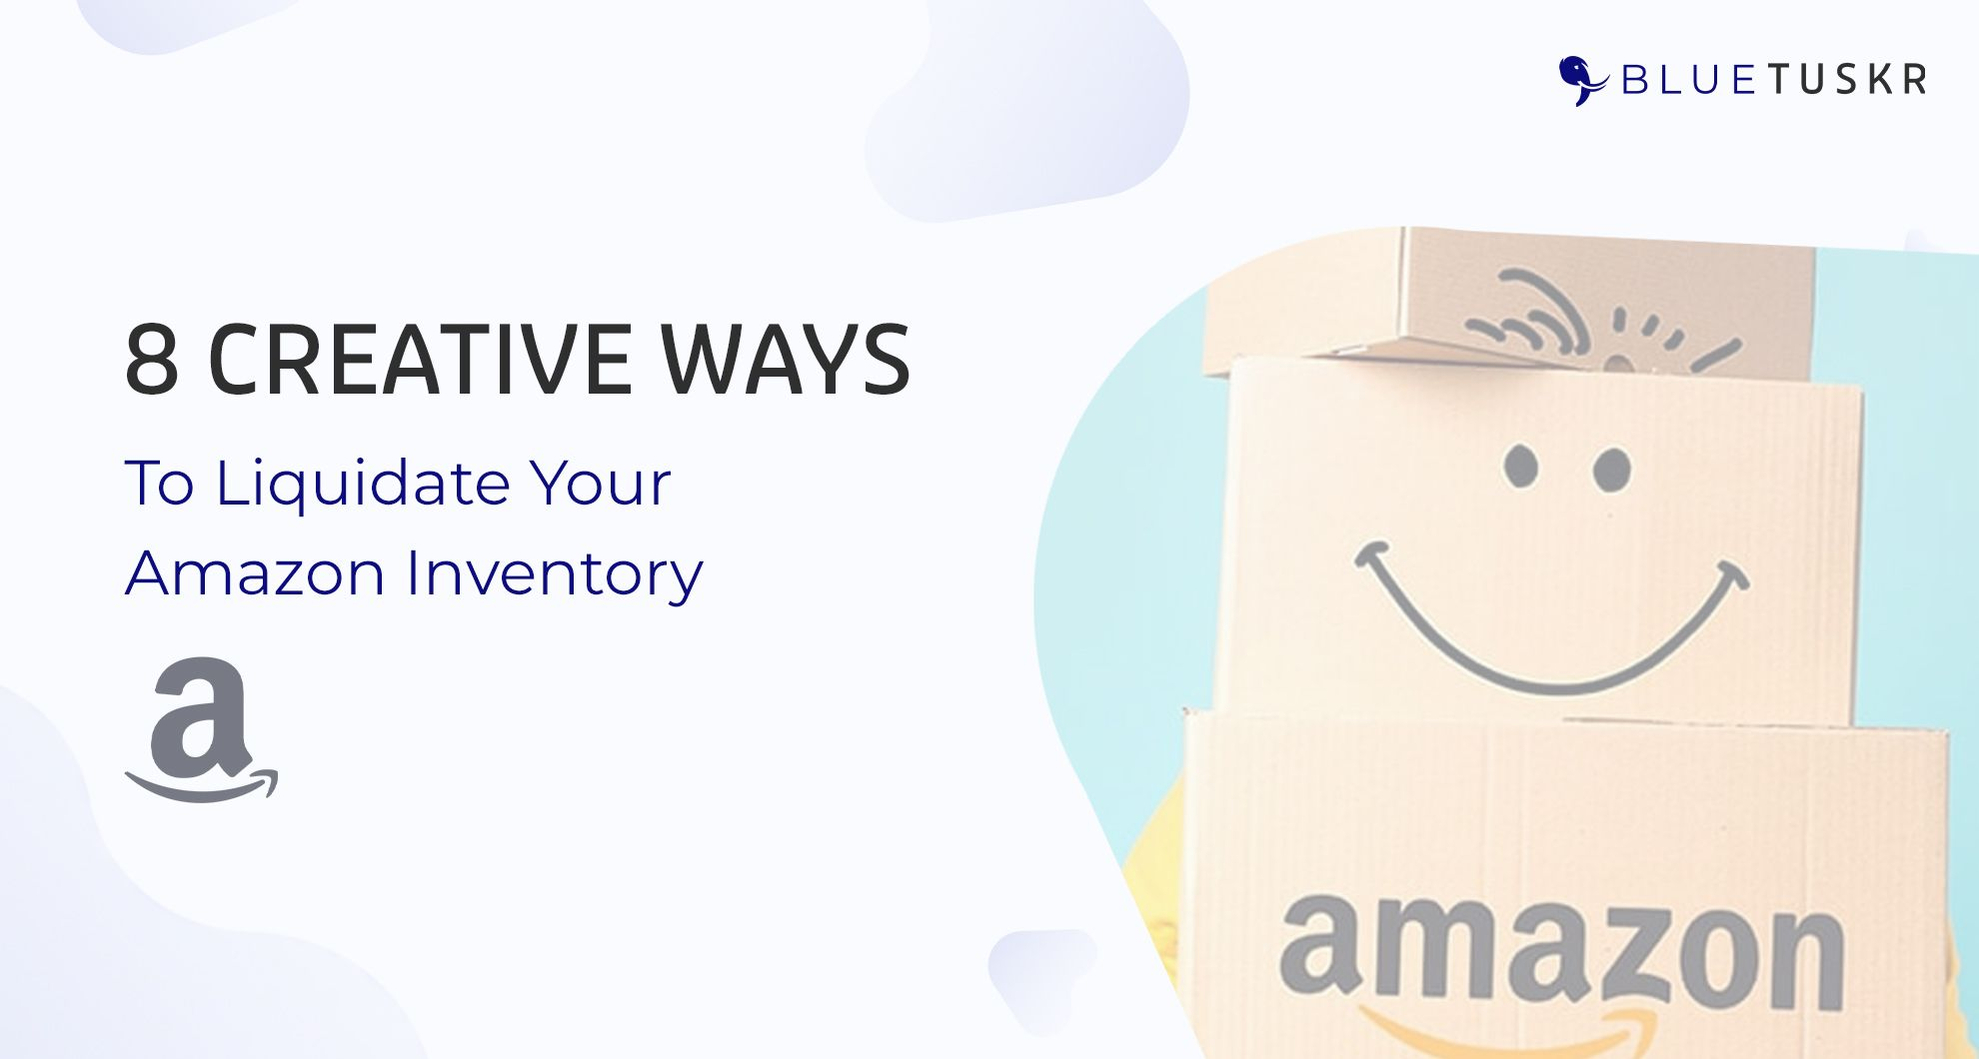 8 Creative Ways to Liquidate Your Amazon Inventory